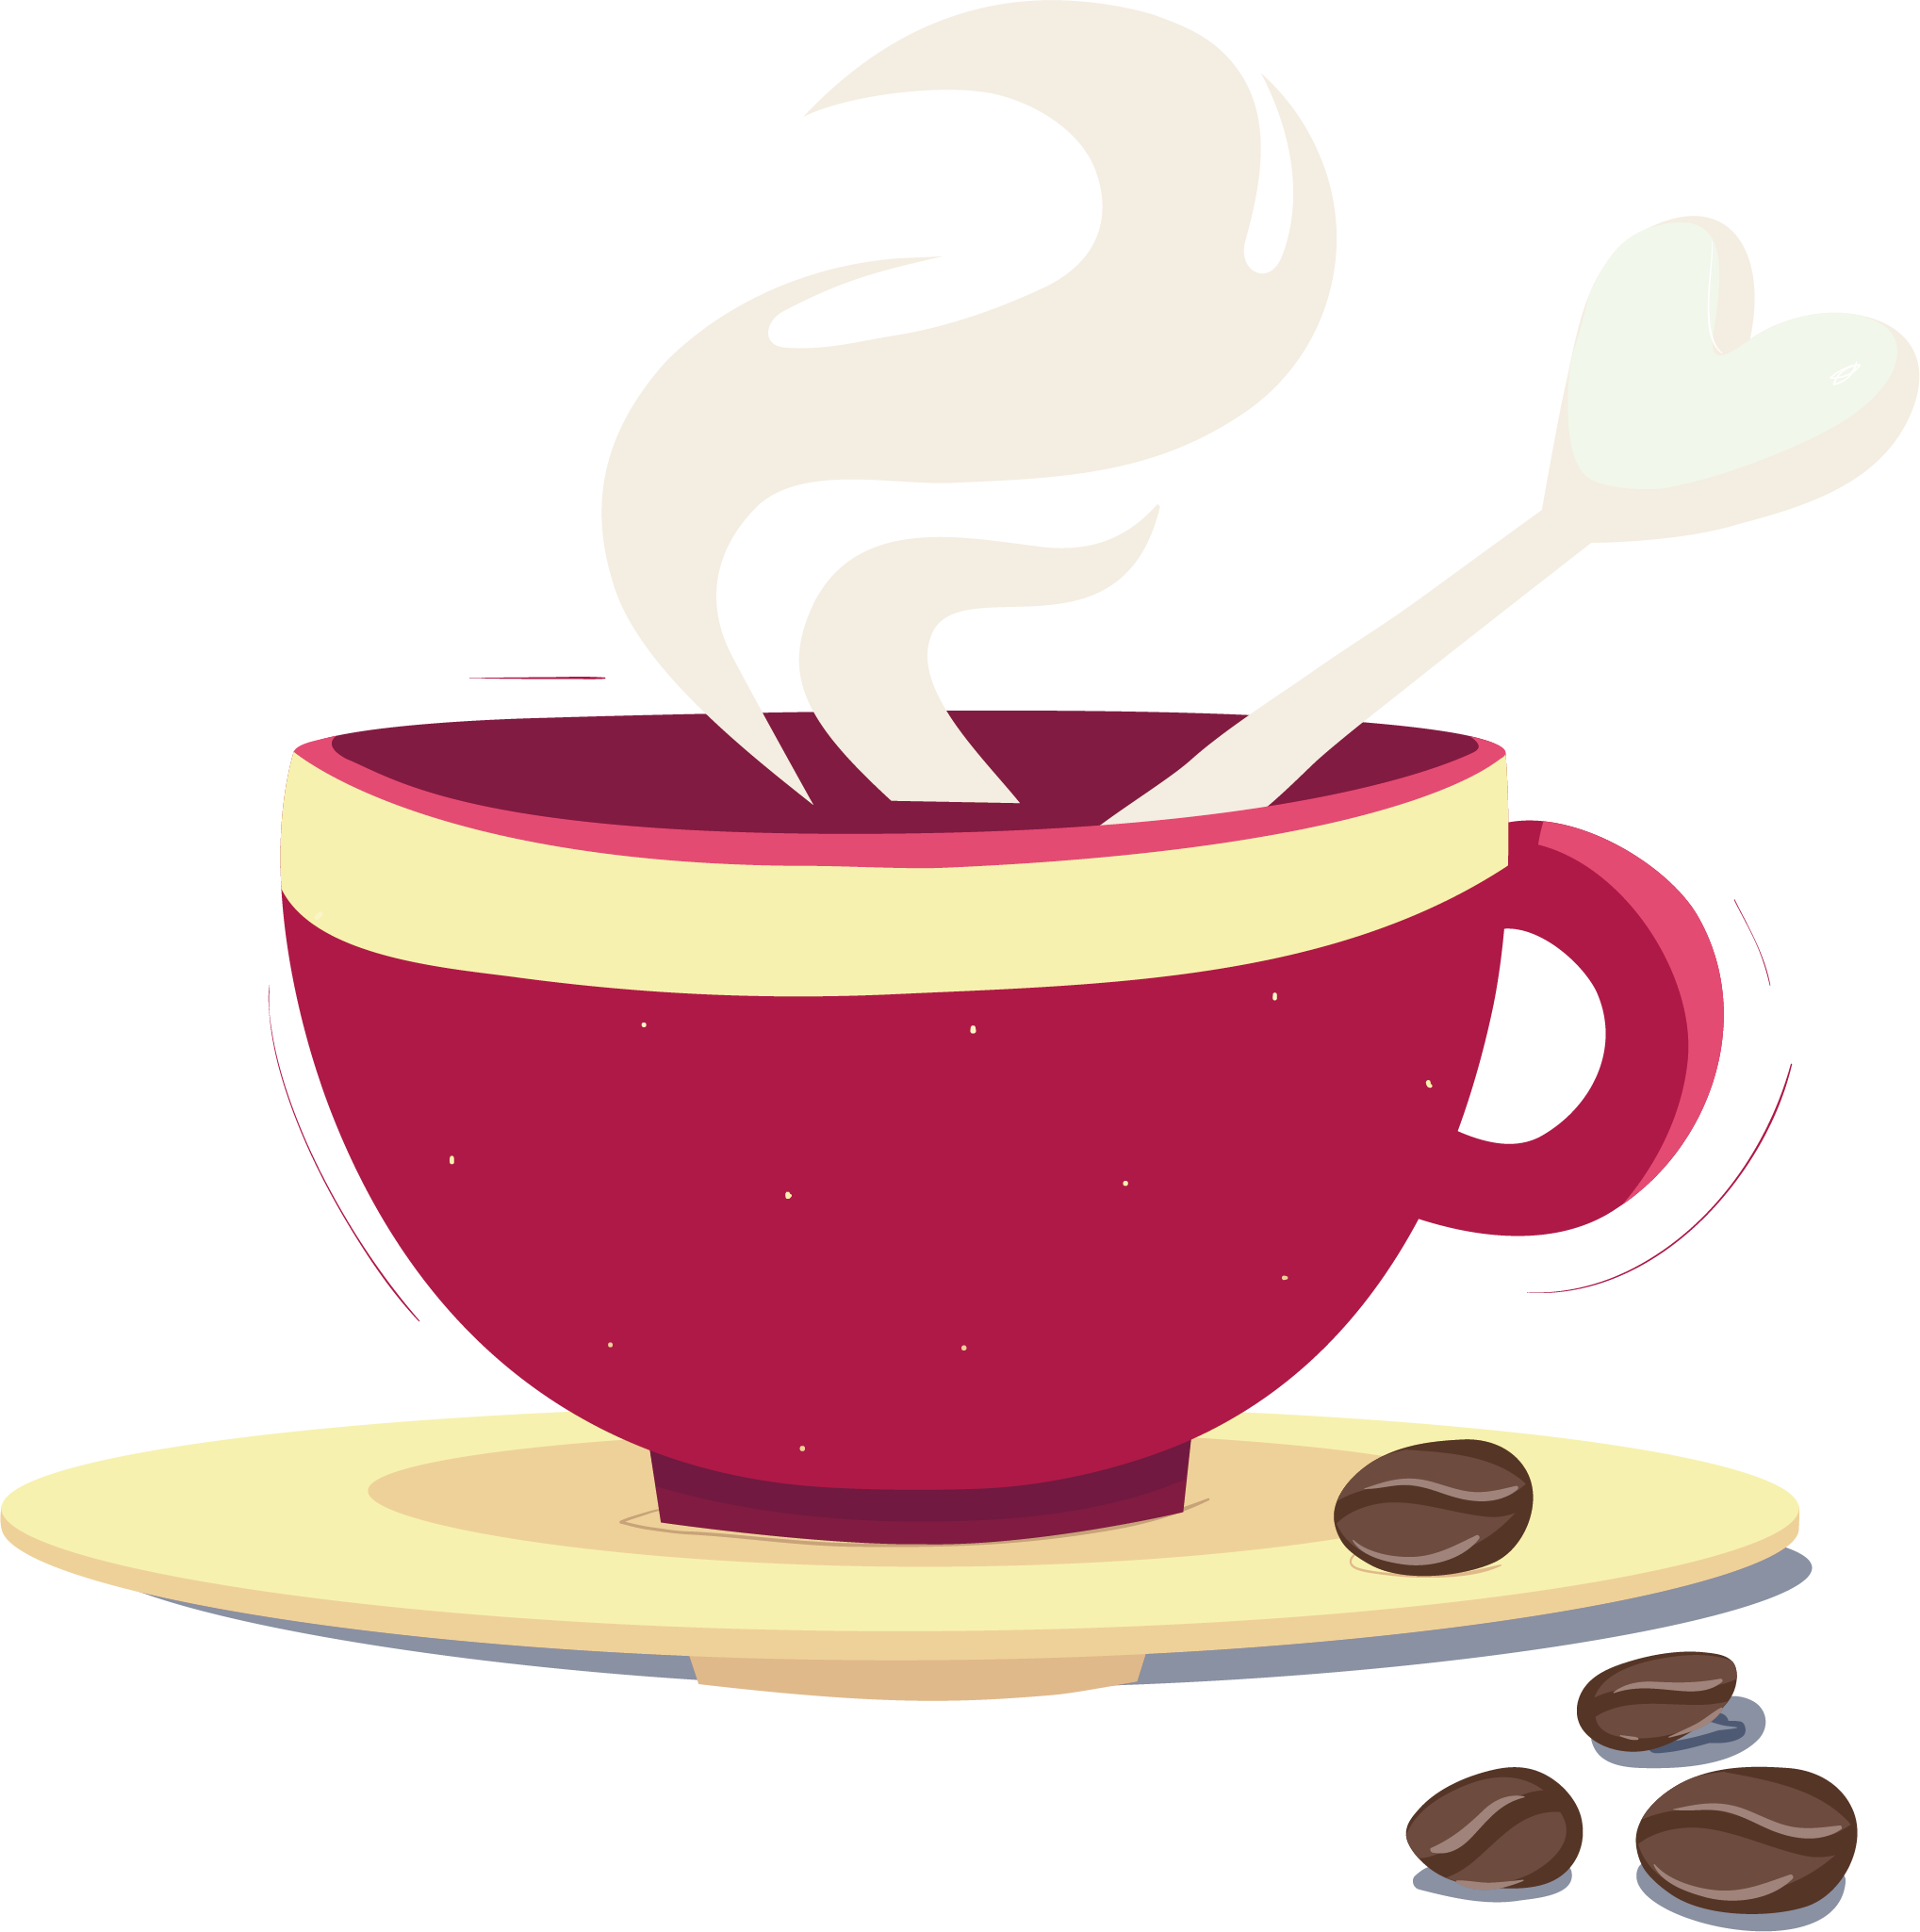 https://clipart-library.com/images_k/fancy-tea-cup-silhouette/fancy-tea-cup-silhouette-15.png